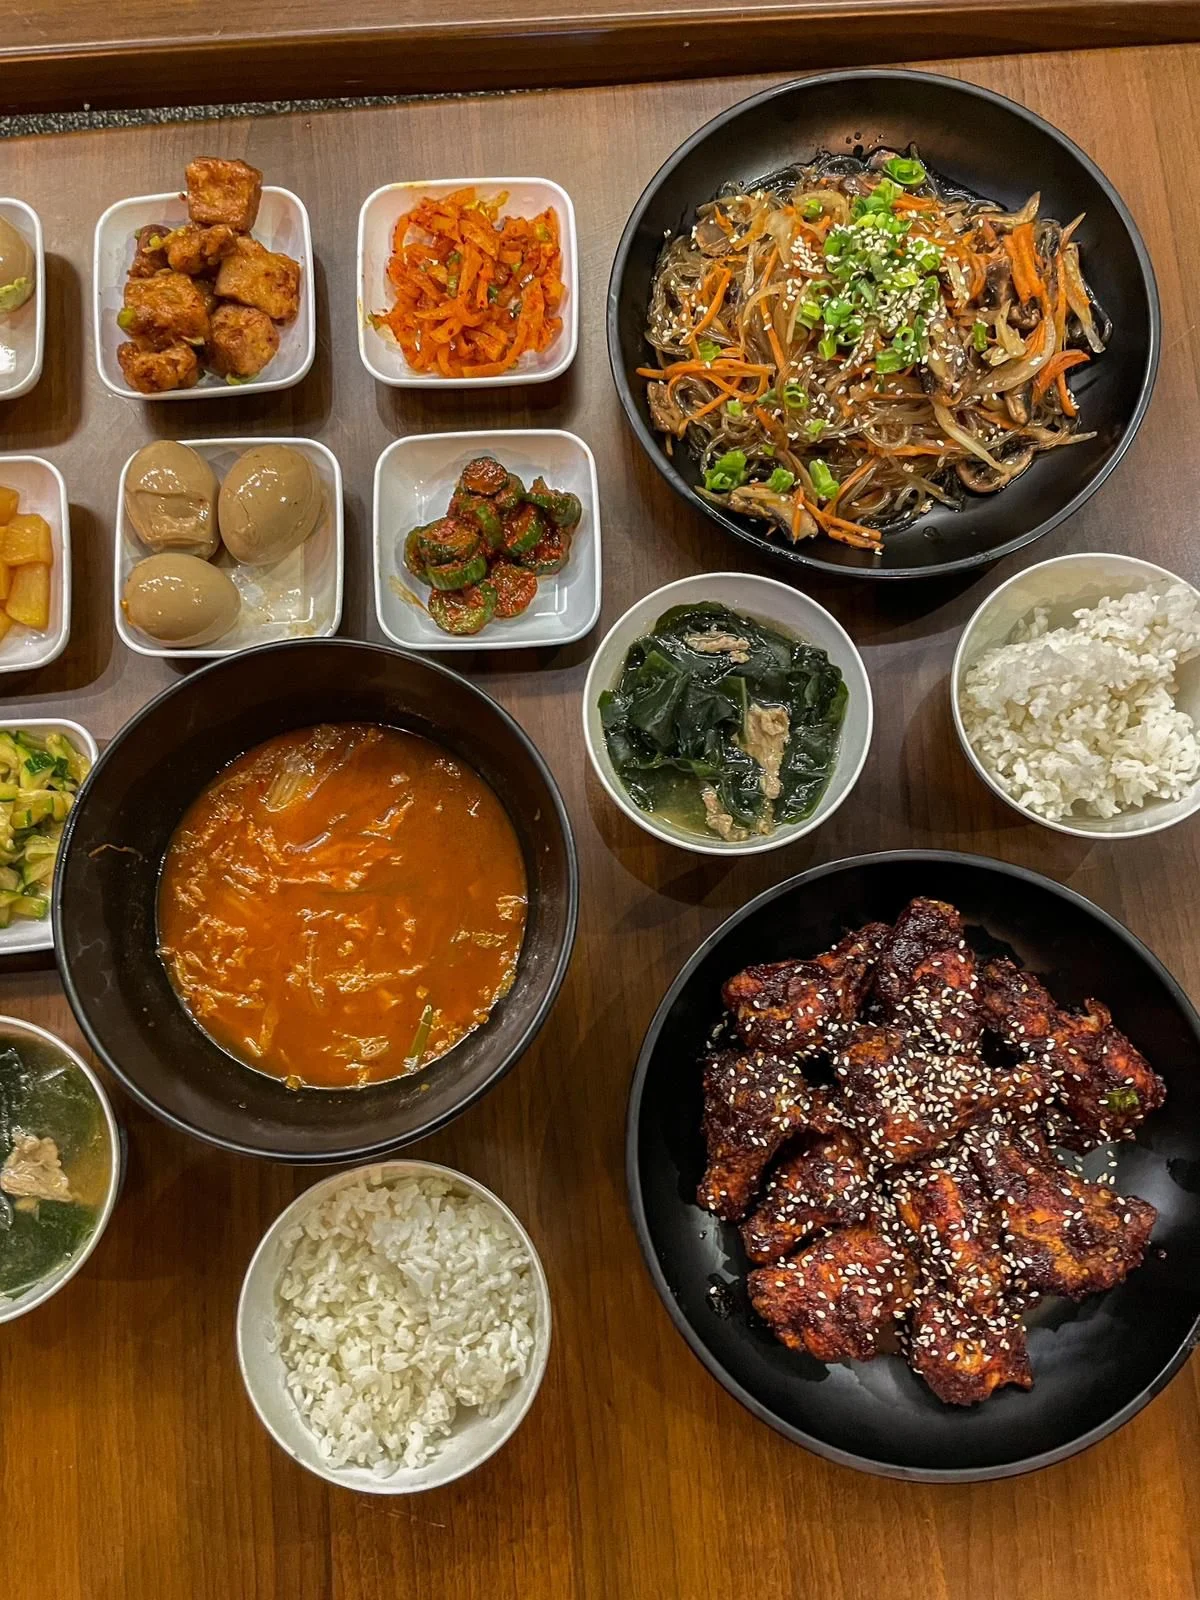 קימצ'י, מסעדה קוריאנית